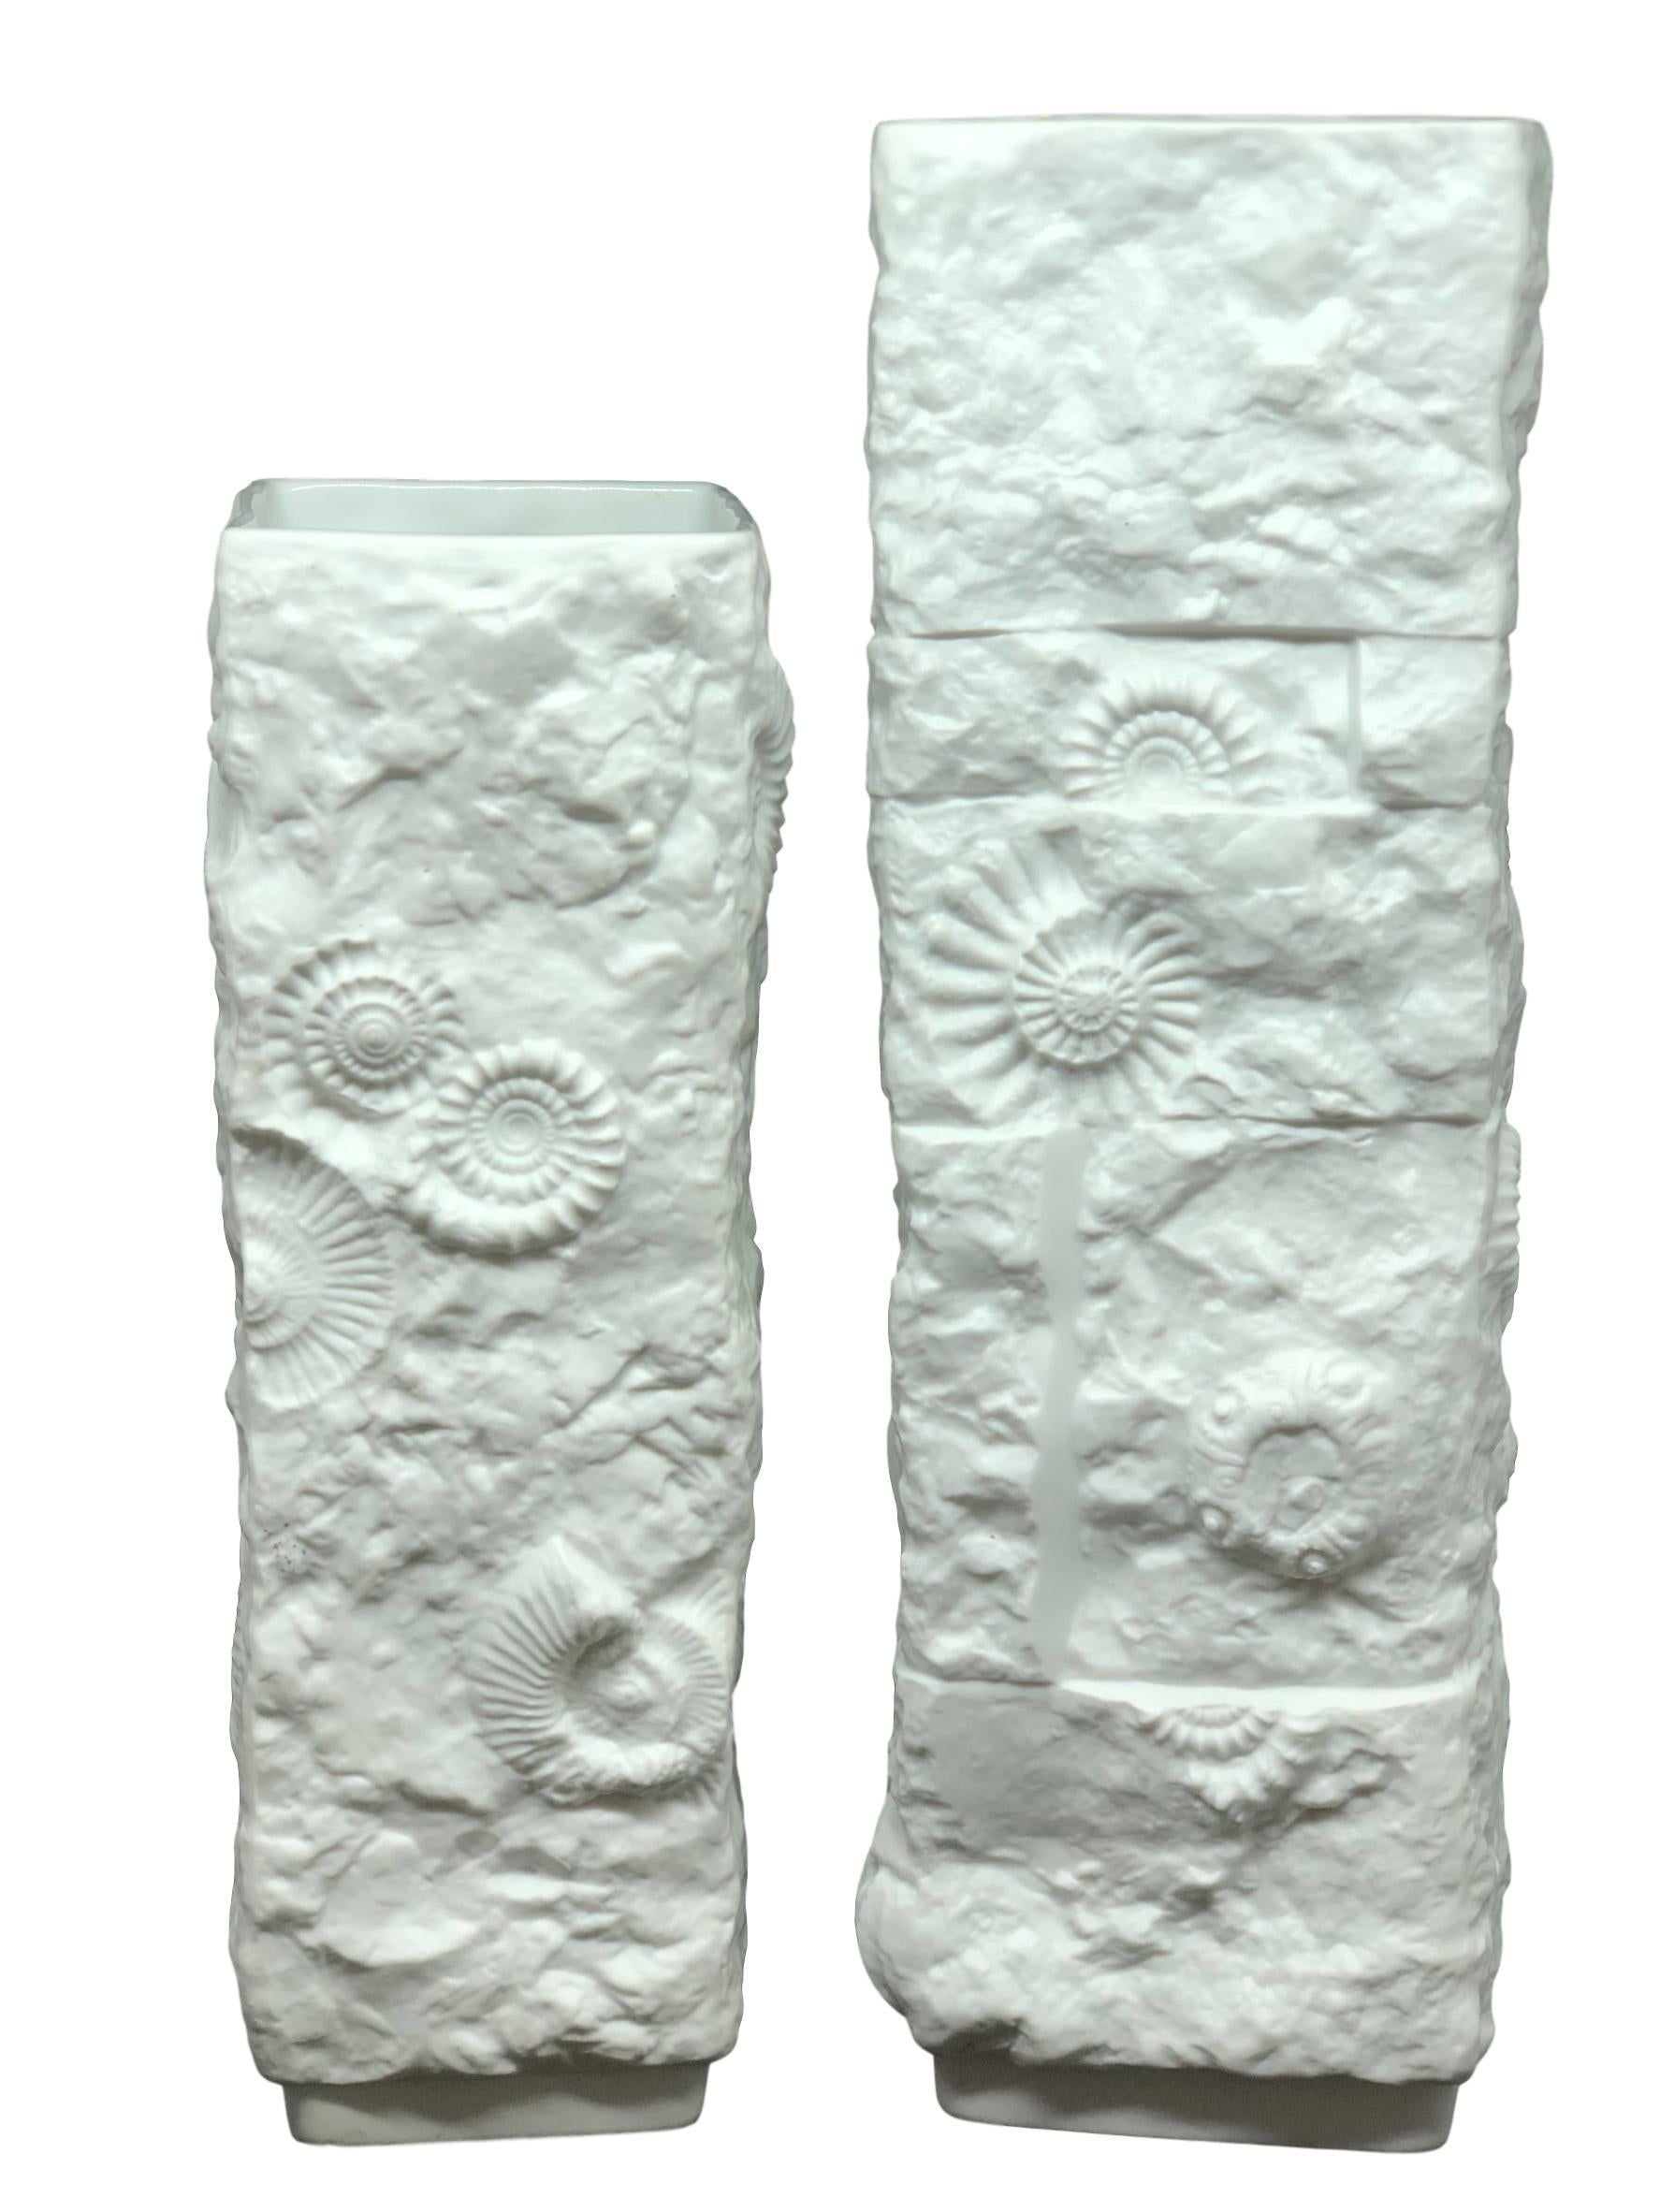 Zwei erstaunliche Biskuit-Porzellan Mitte des Jahrhunderts Studio Kunst Keramik Vase in Deutschland gemacht, von Kaiser Porzellan, ca. 1970er Jahre. Die Vasen sind in sehr gutem Zustand, ohne Chips, Risse oder Flohbisse. Signiert mit